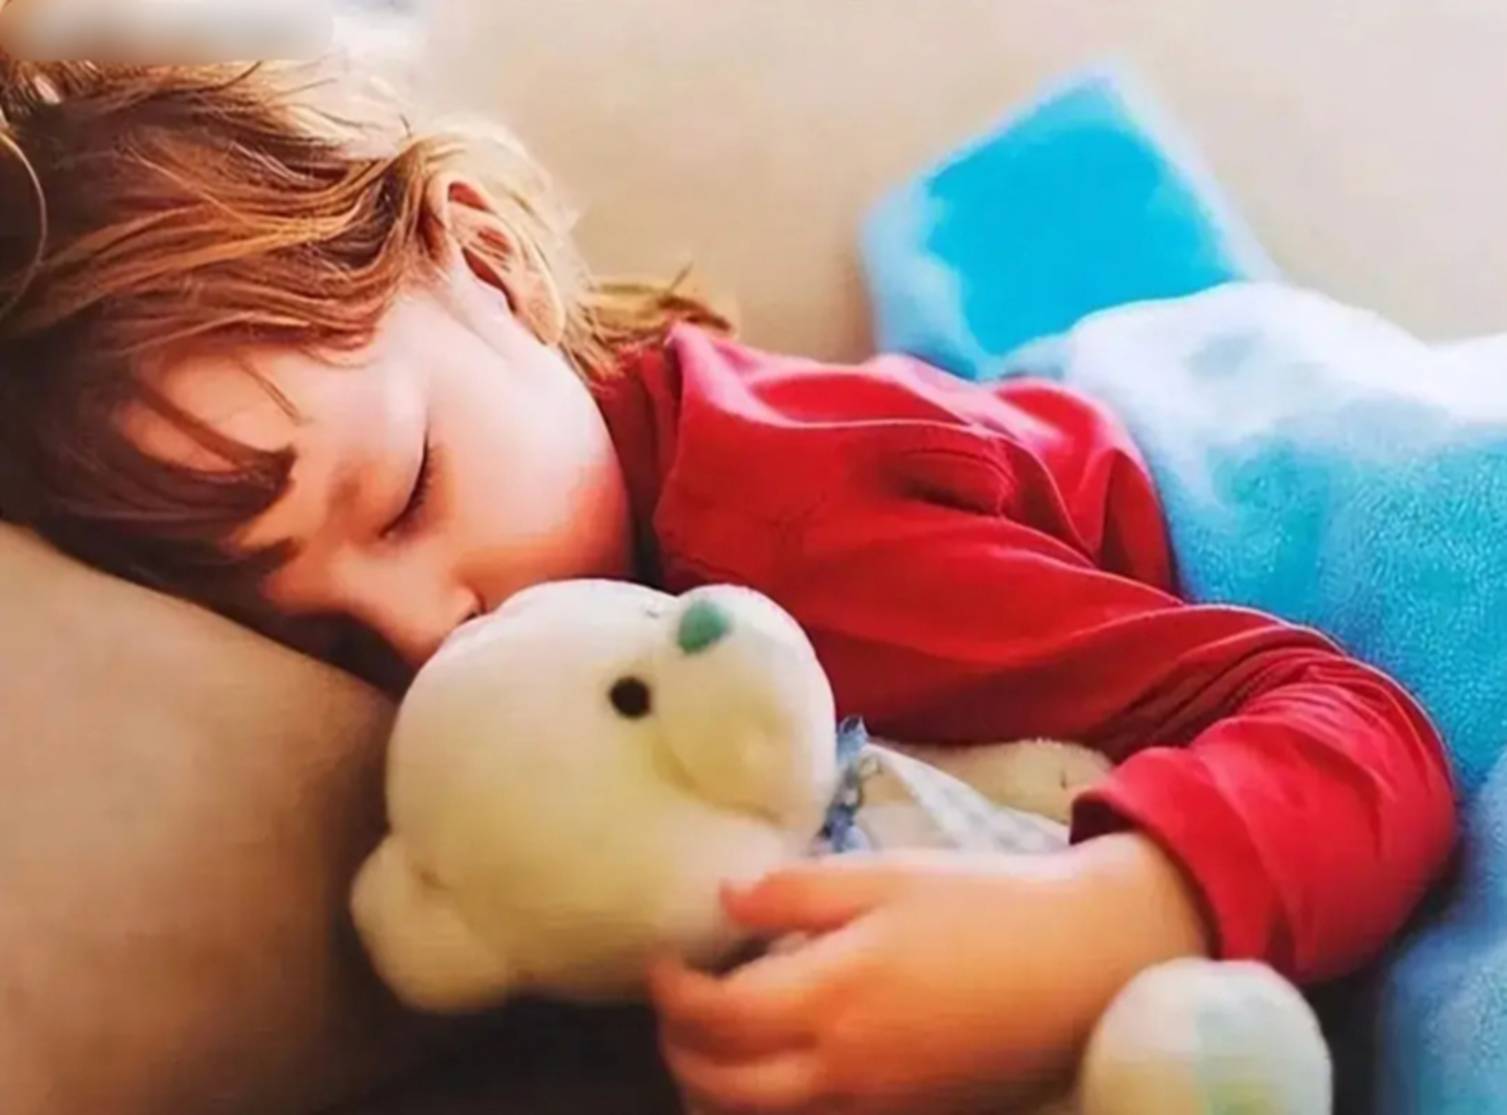 Nghiên cứu tâm lý phát hiện: Những đứa trẻ thông minh thường ngủ tư thế này ngay từ nhỏ-3